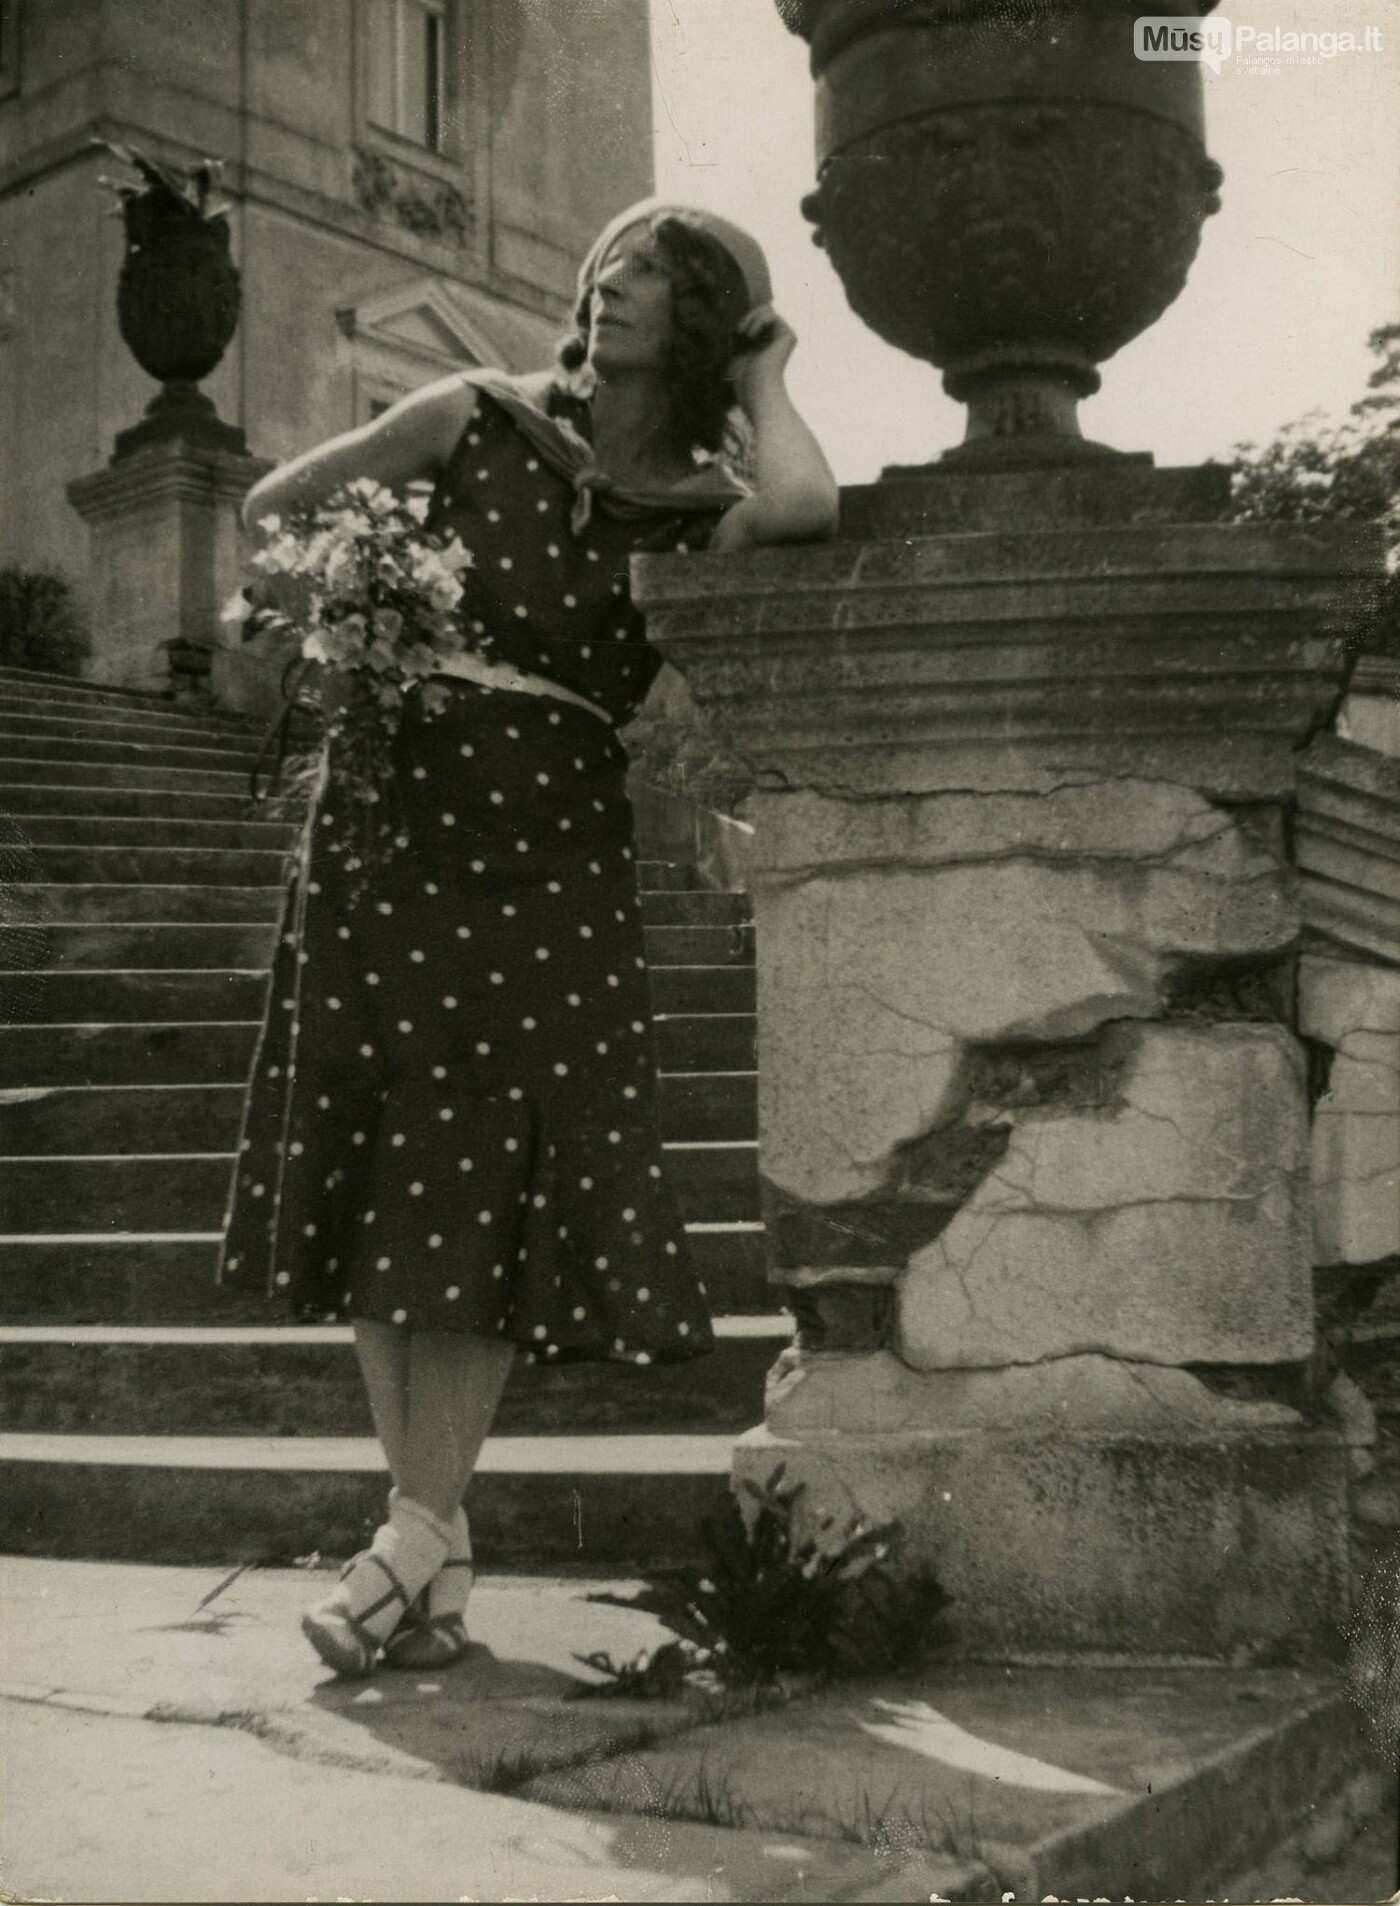 Olga Dubeneckienė – Palangos parke. Apie 1934. LTMKM archyvo nuotr.